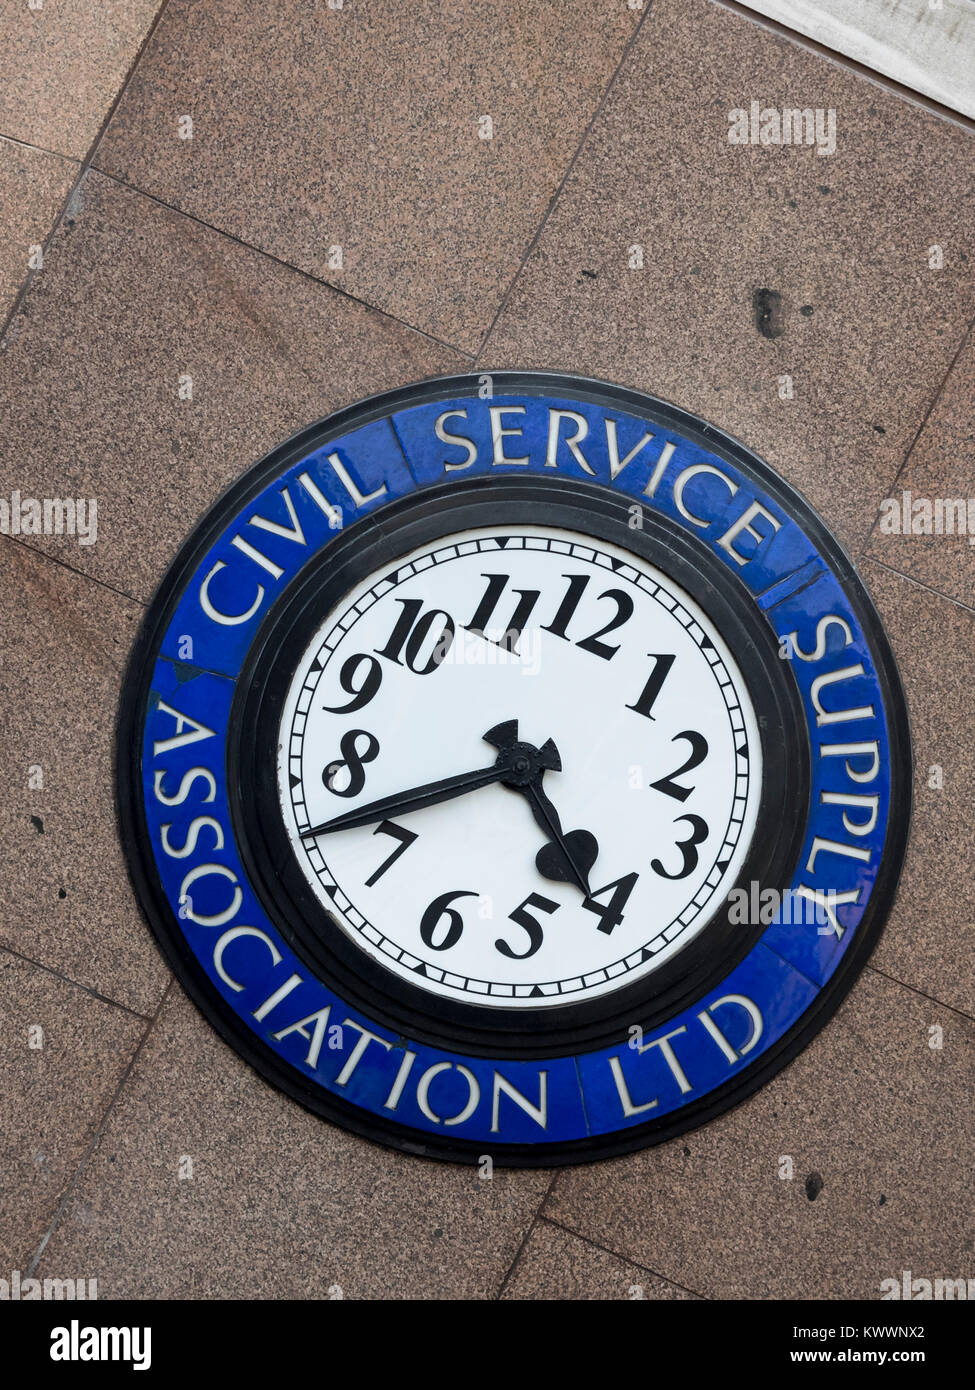 LONDON, Vereinigtes Königreich - 01. NOVEMBER 2017: Uhr außerhalb von 425 Uhr The Strand, ehemaliges Gebäude der Civil Service Supply Association mit Schild Stockfoto